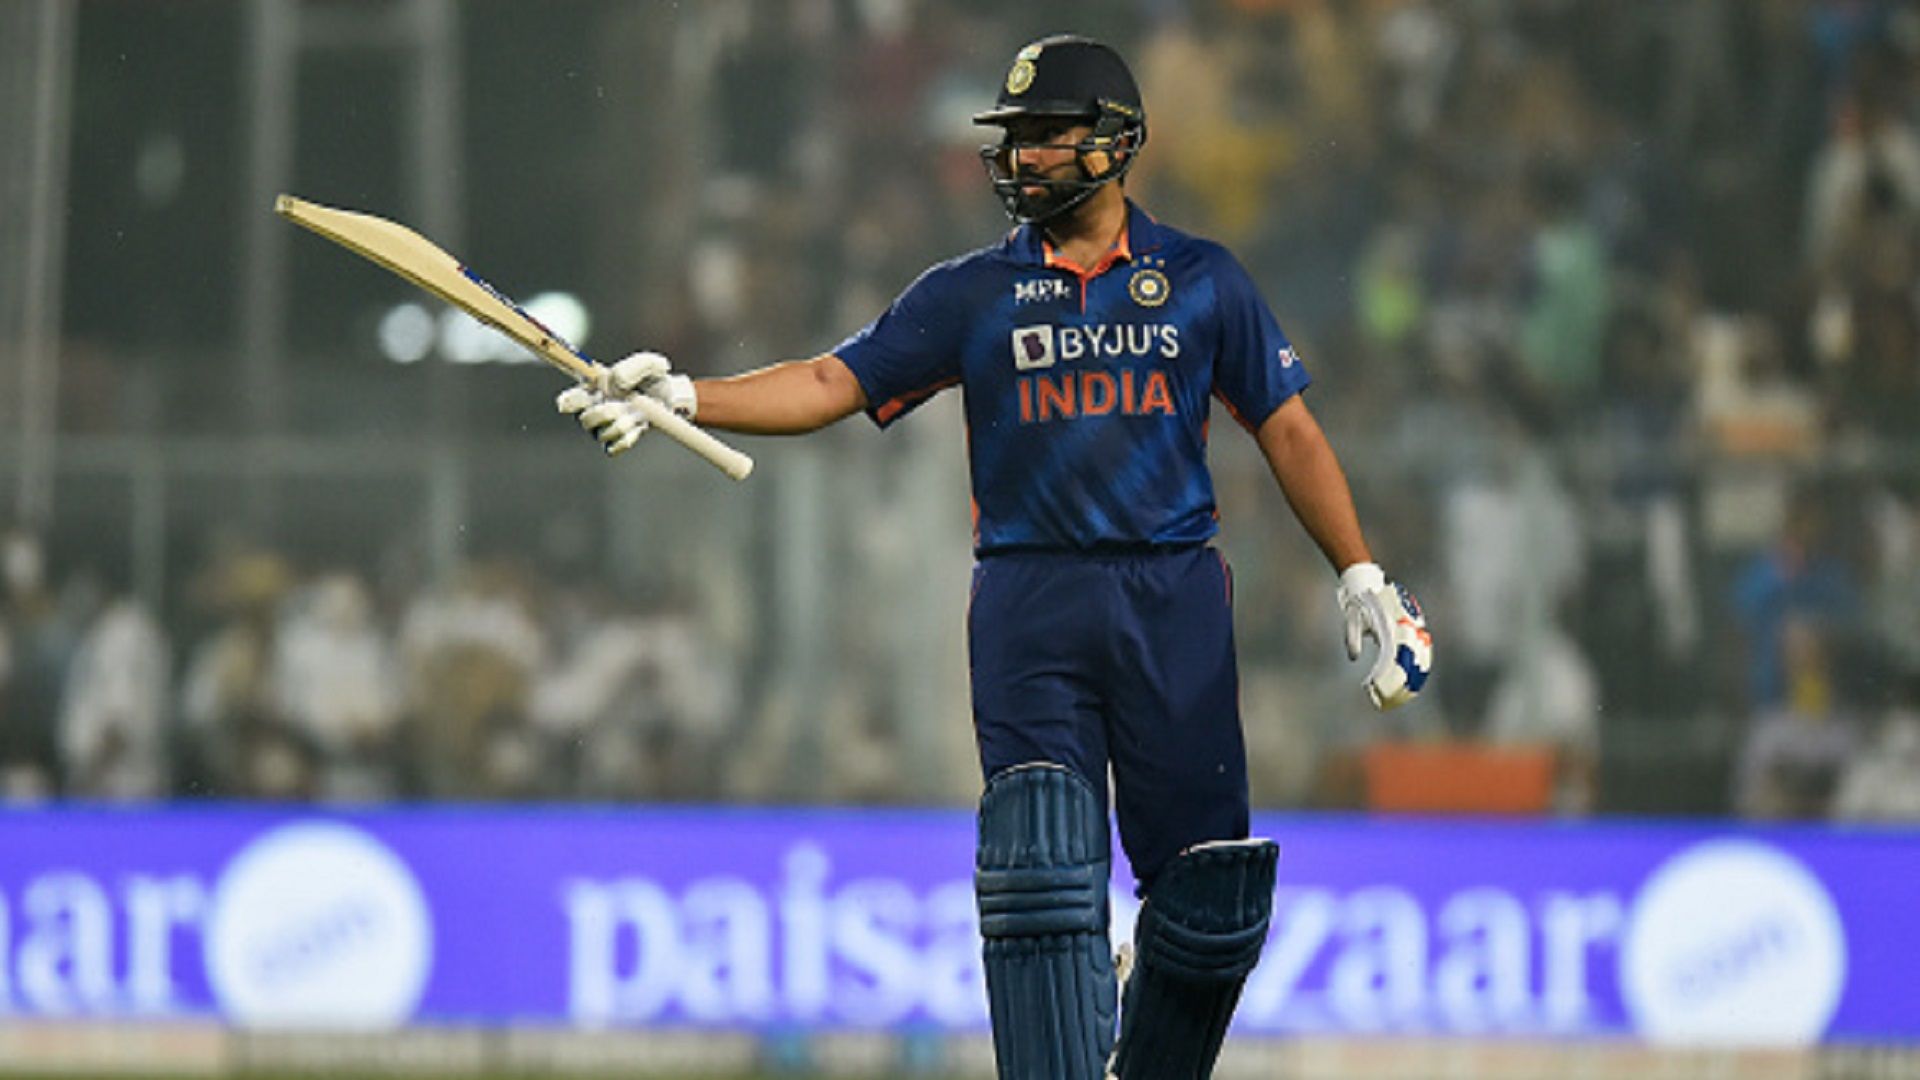 IND vs WI : जीत के बाद डेब्यू मैच में छाने वाले रवि बिश्नोई के मुरीद हुए कप्तान रोहित शर्मा, कहा - वह बहुत ही शानदार टैलेंट है...